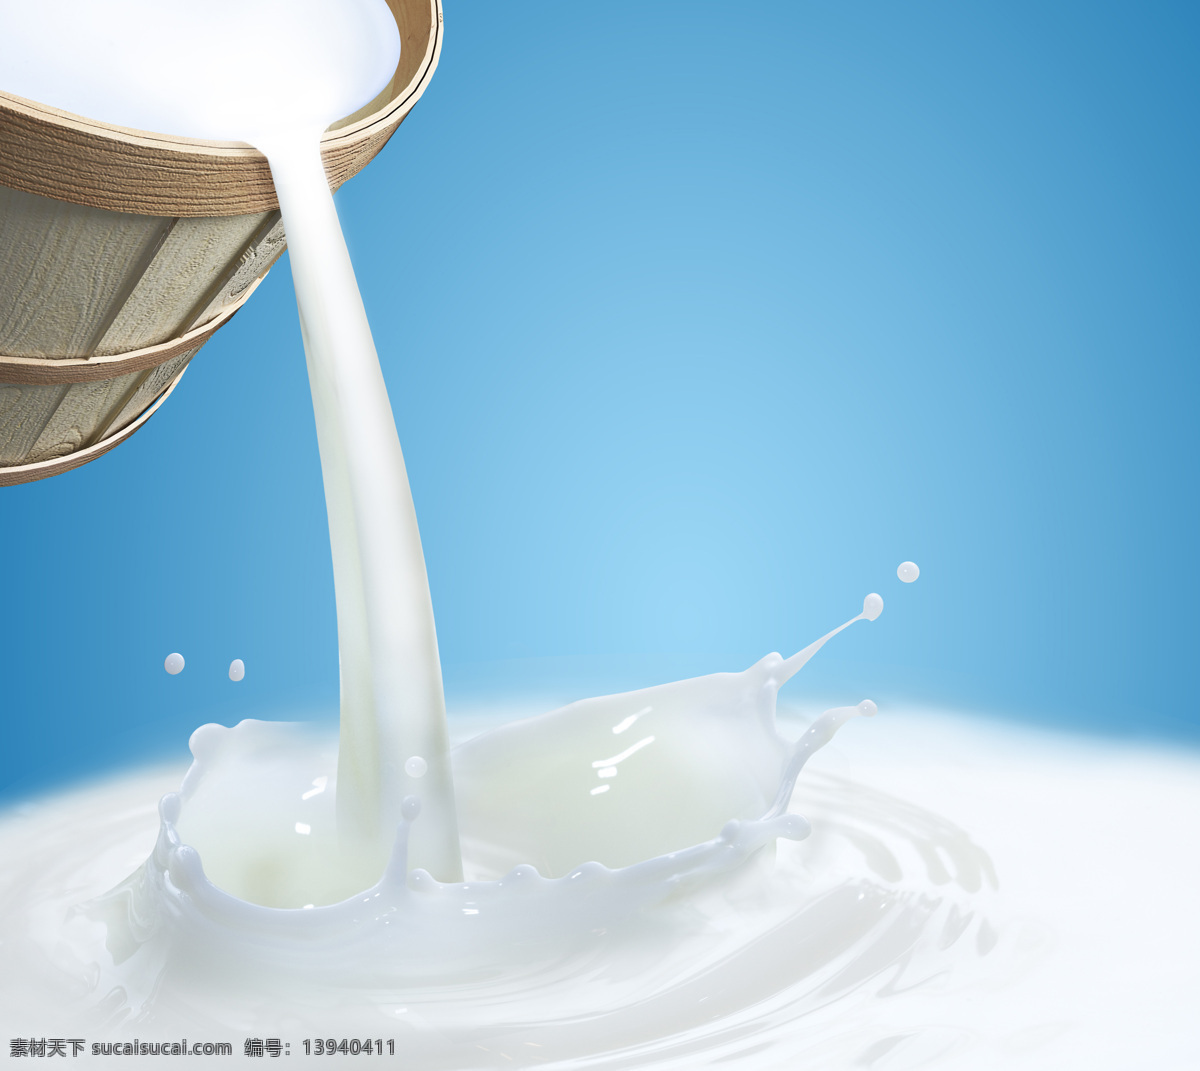 牛奶 广告 倒牛奶 牛奶桶 容器 动感牛奶 动感液体 乳白色液体 动感 奶滴 飞溅 涟漪 蓝色背景 饮品 饮料 餐饮美食 牛奶广告素材 酒类图片